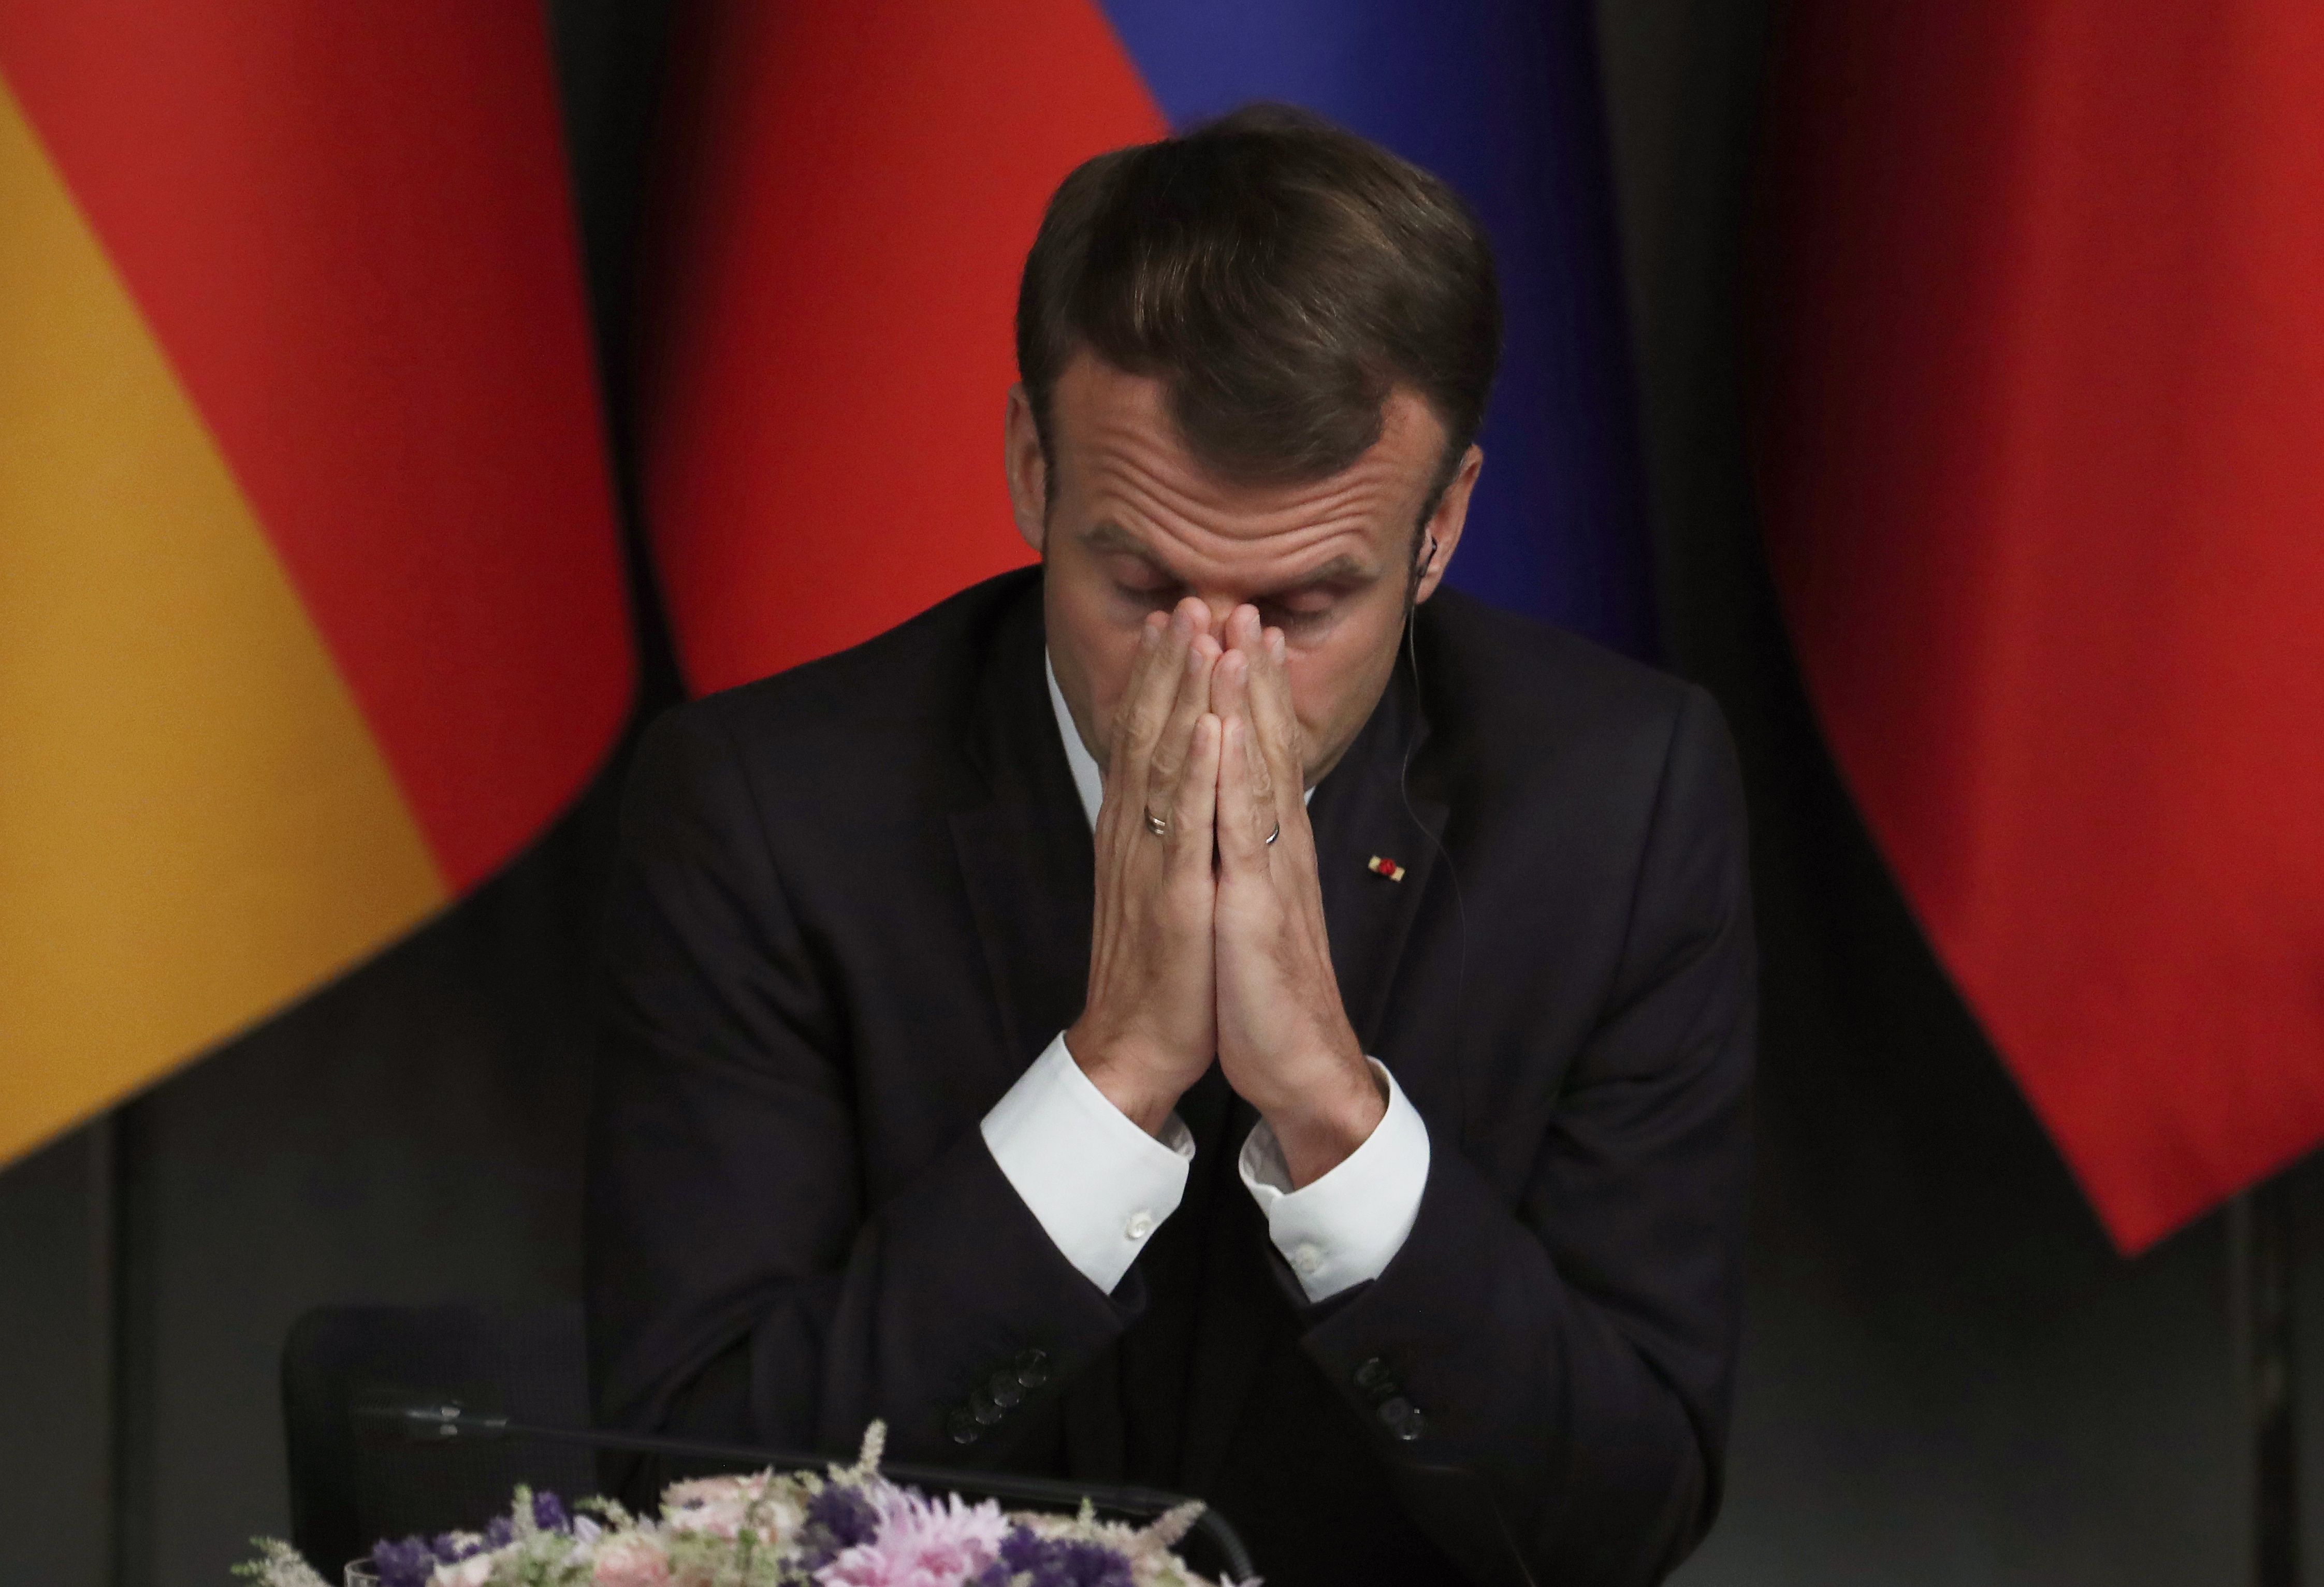 Le cortège d'Emmanuel Macron interrompt un enterrement : La famille du défunt ne décolère pas !